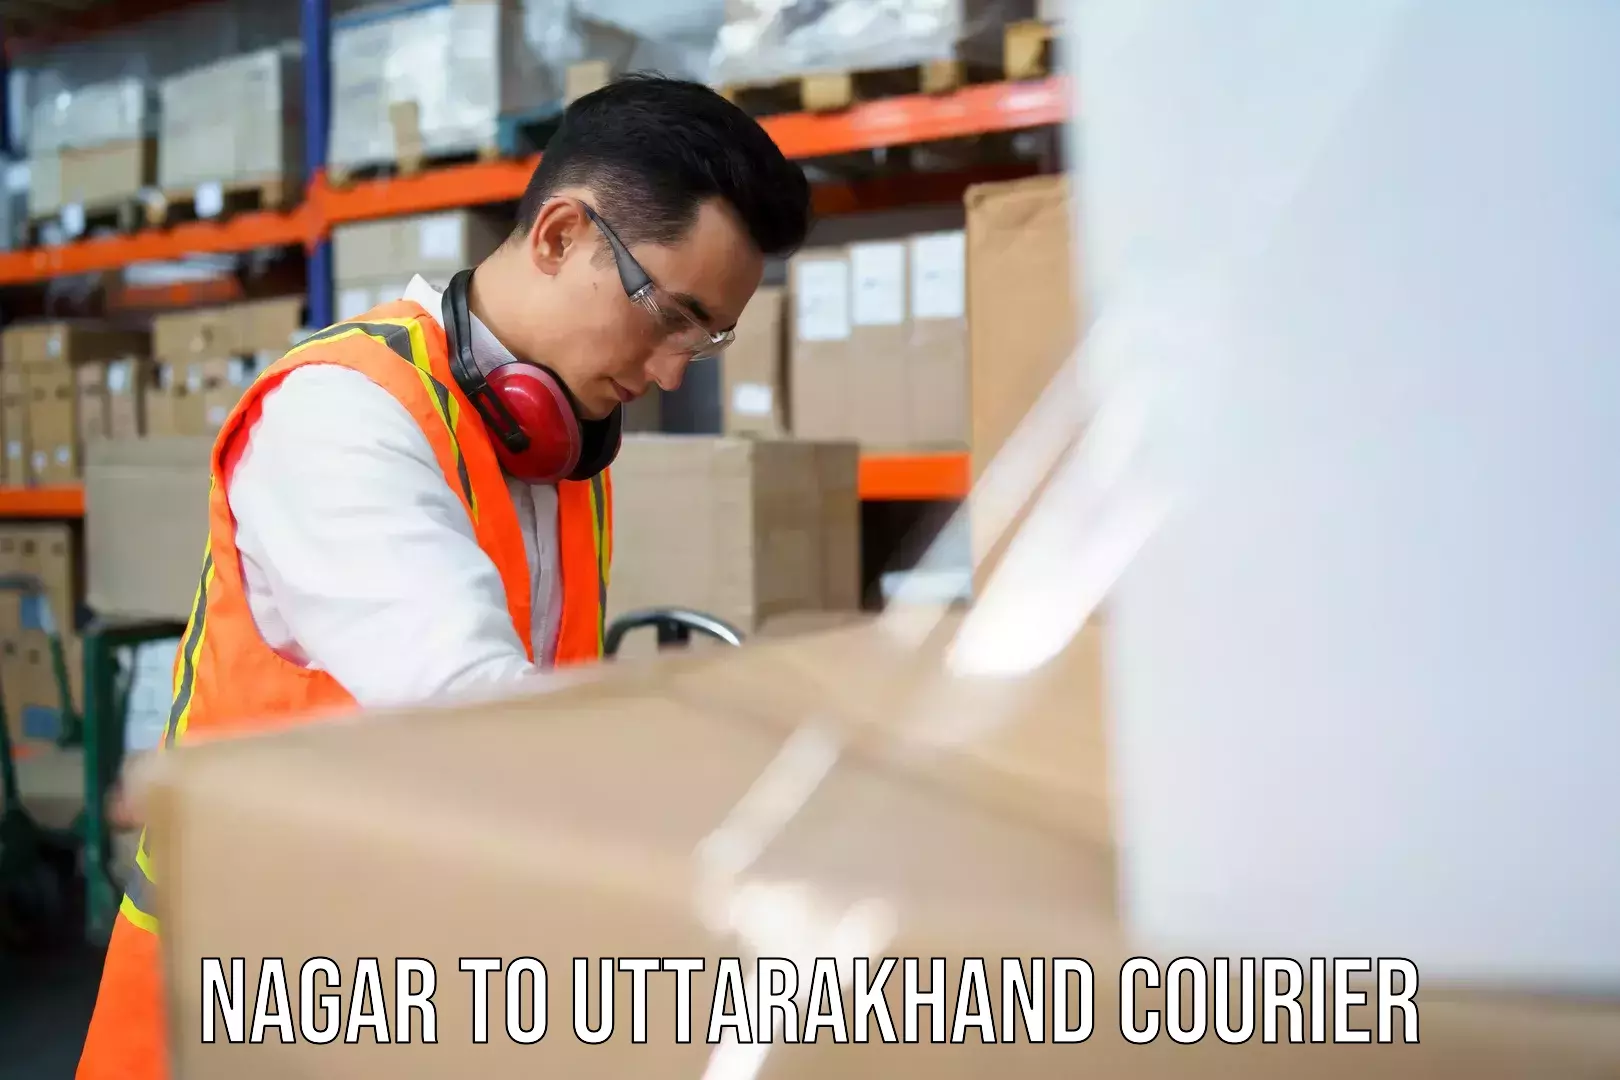 State-of-the-art courier technology Nagar to Uttarakhand